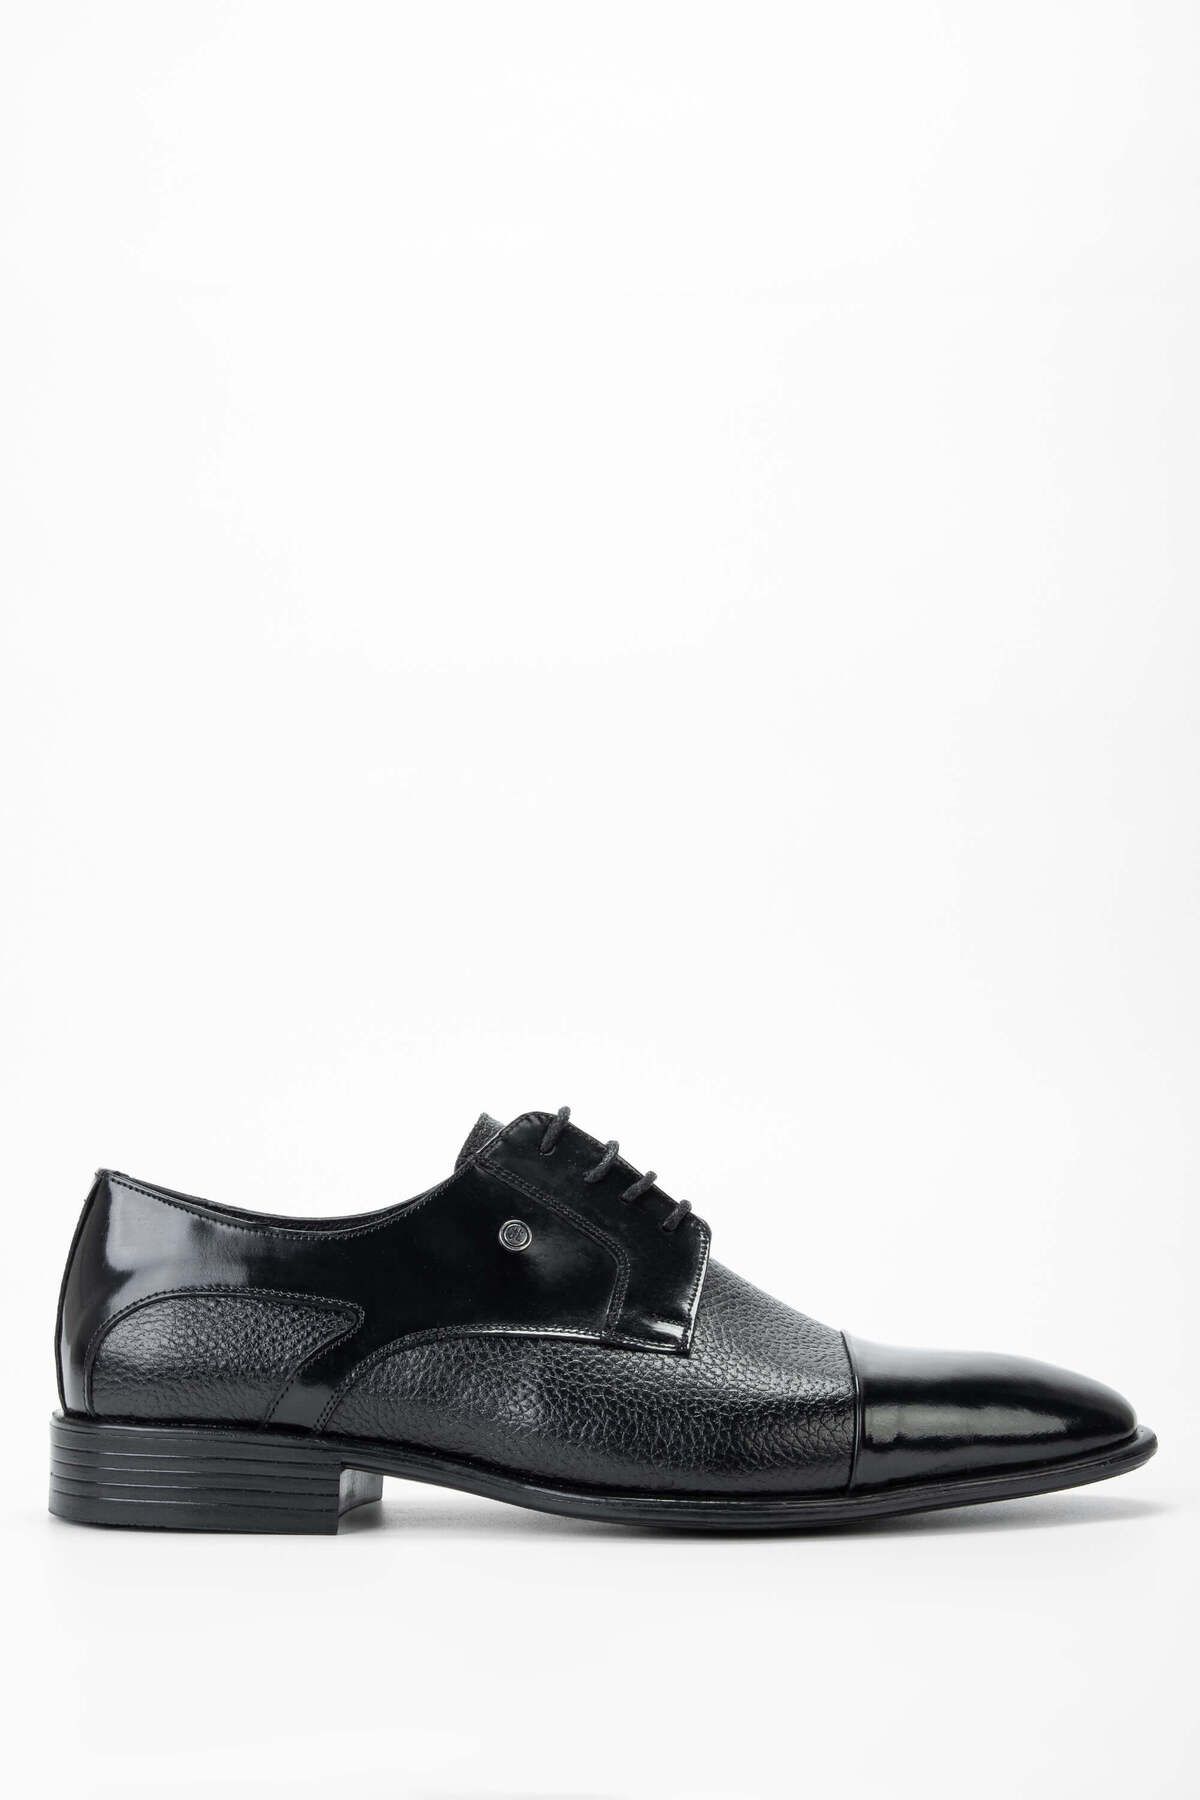 Tamer Tanca Erkek Hakiki Deri Siyah/Siyah Klasik Ayakkabı